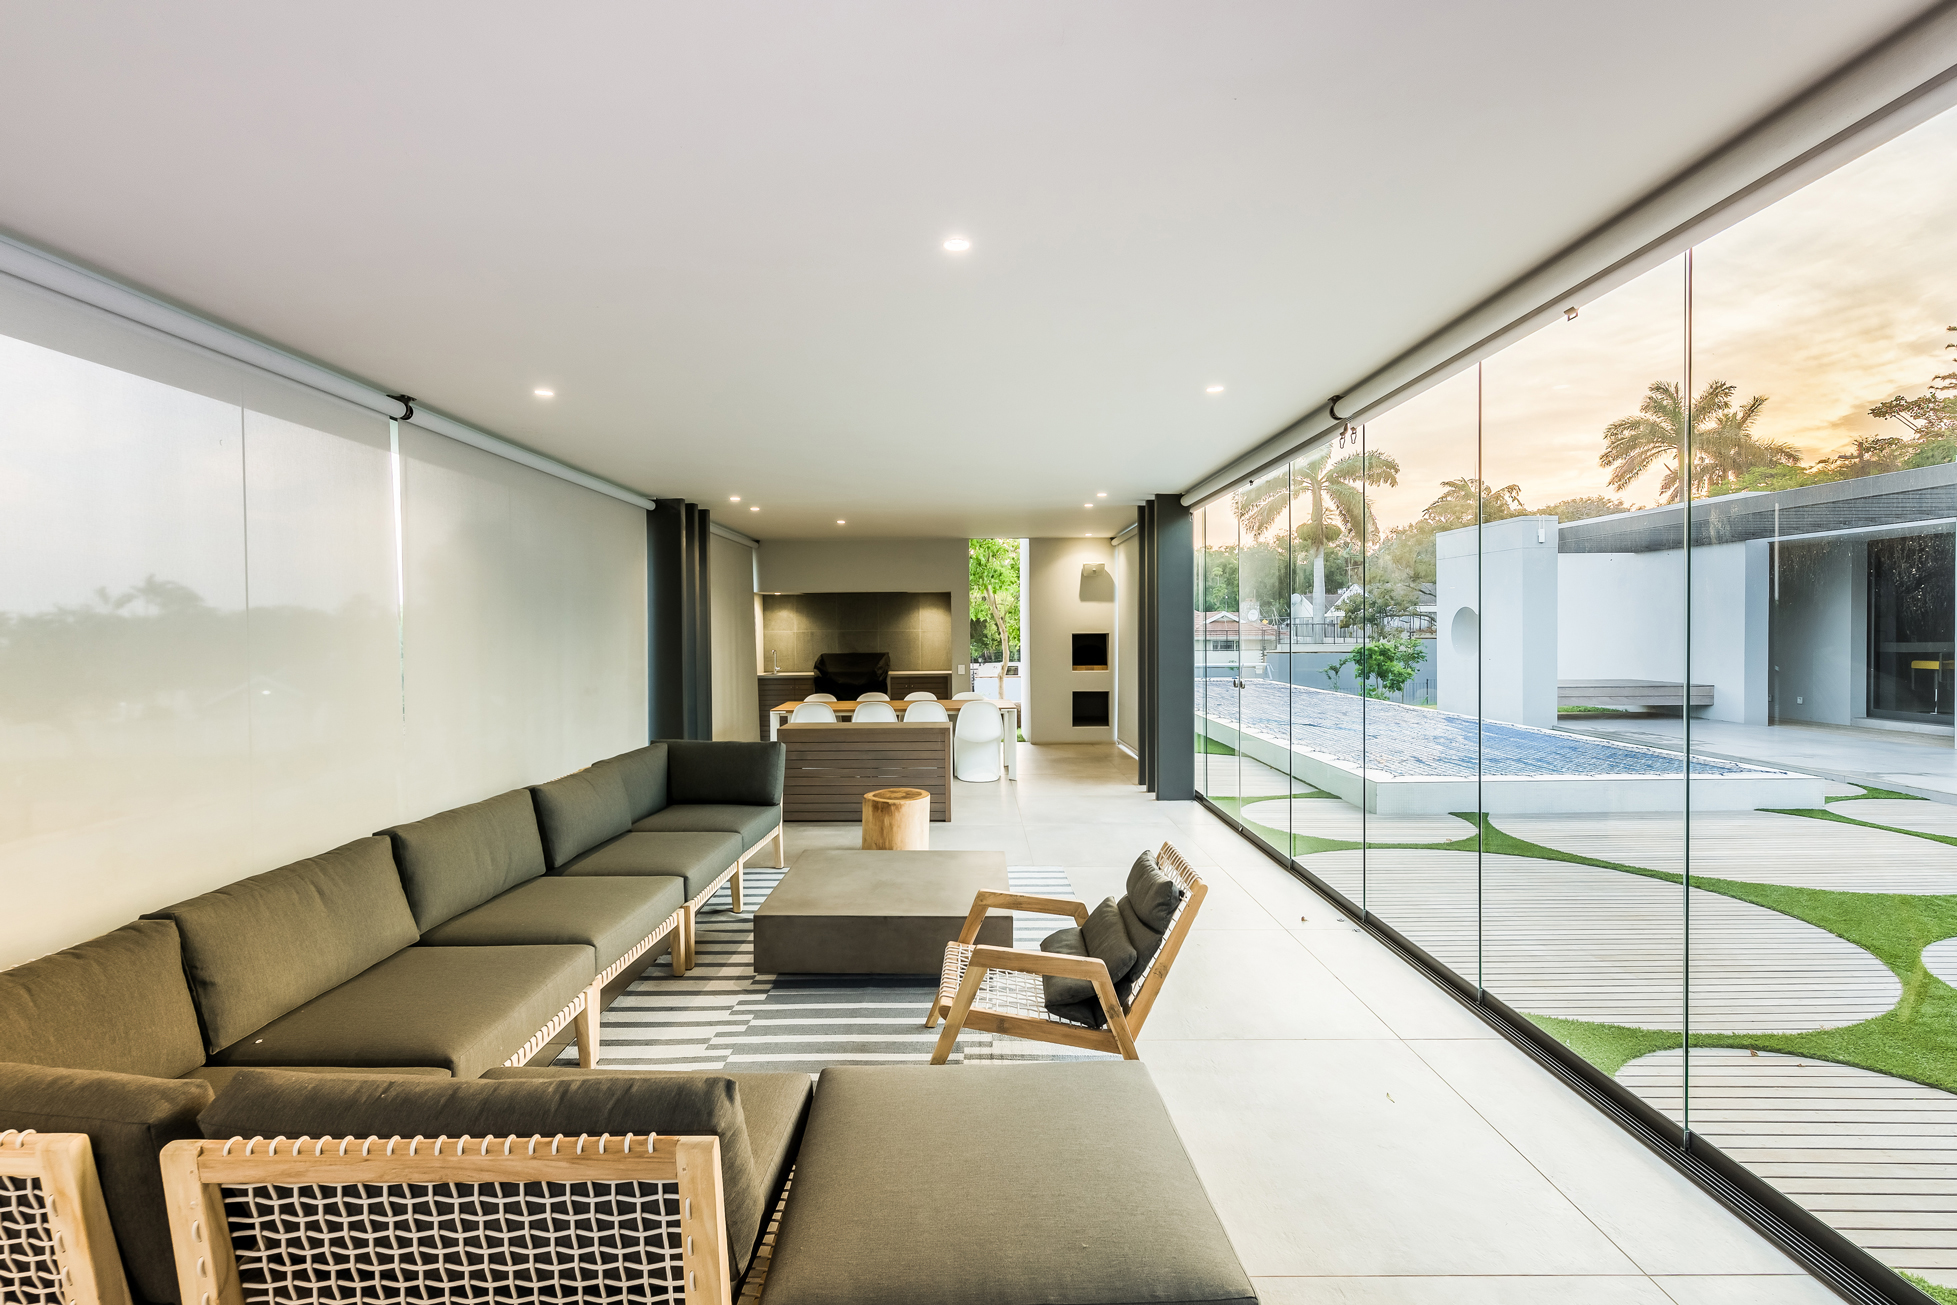 Luxoriöses Poolhaus mit Glasschiebetüren von Sunflex mit Innenbeschattung